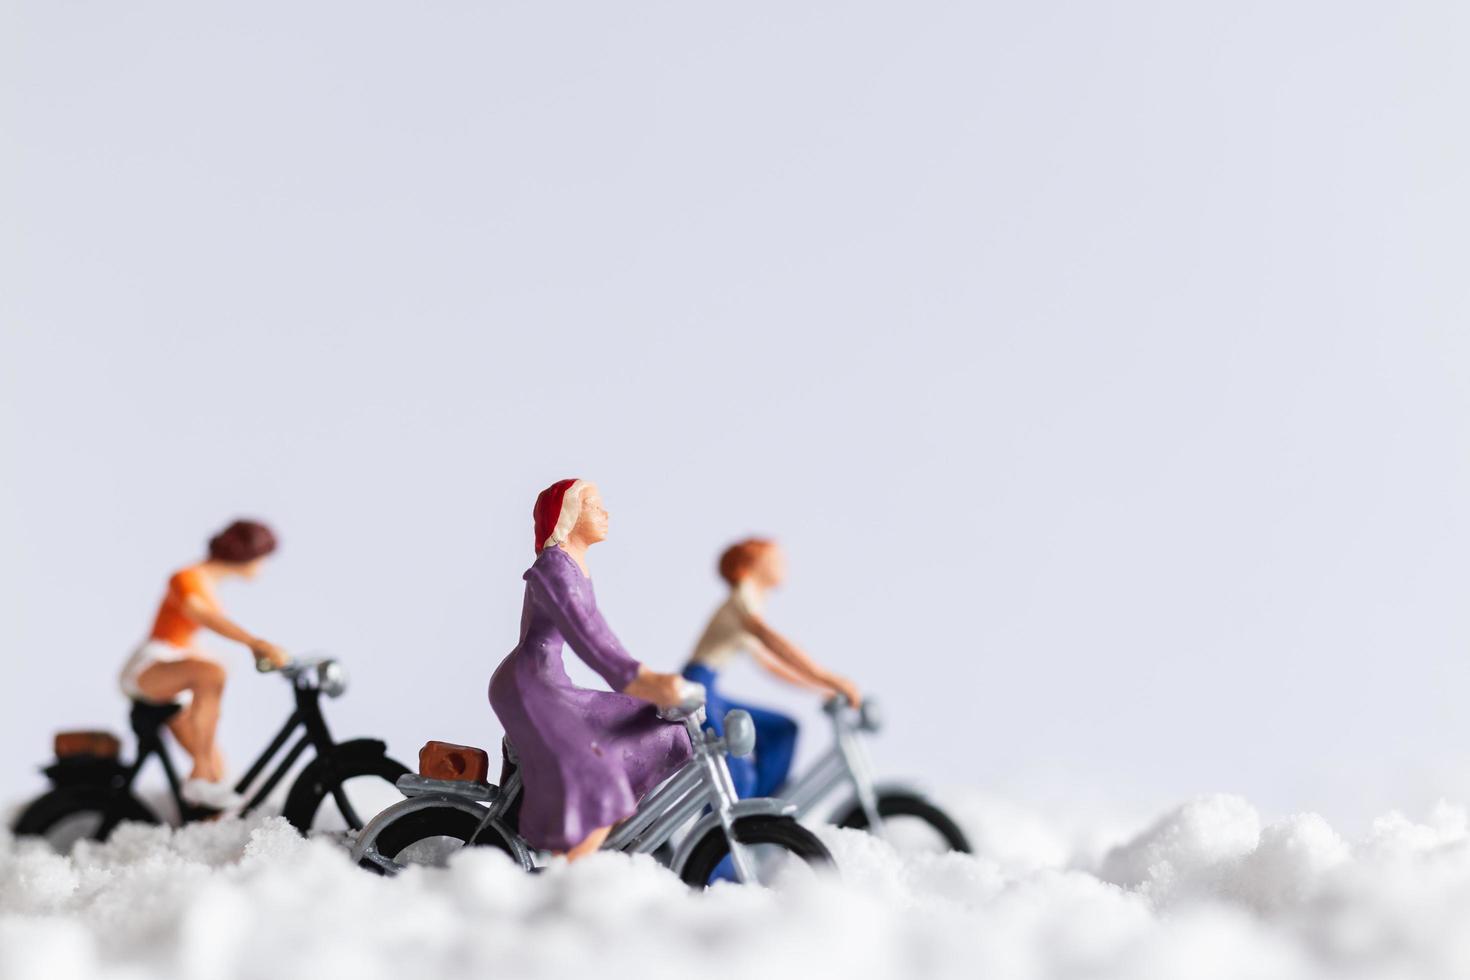 voyageurs miniatures à bicyclette dans la neige, concept de fond d'hiver photo